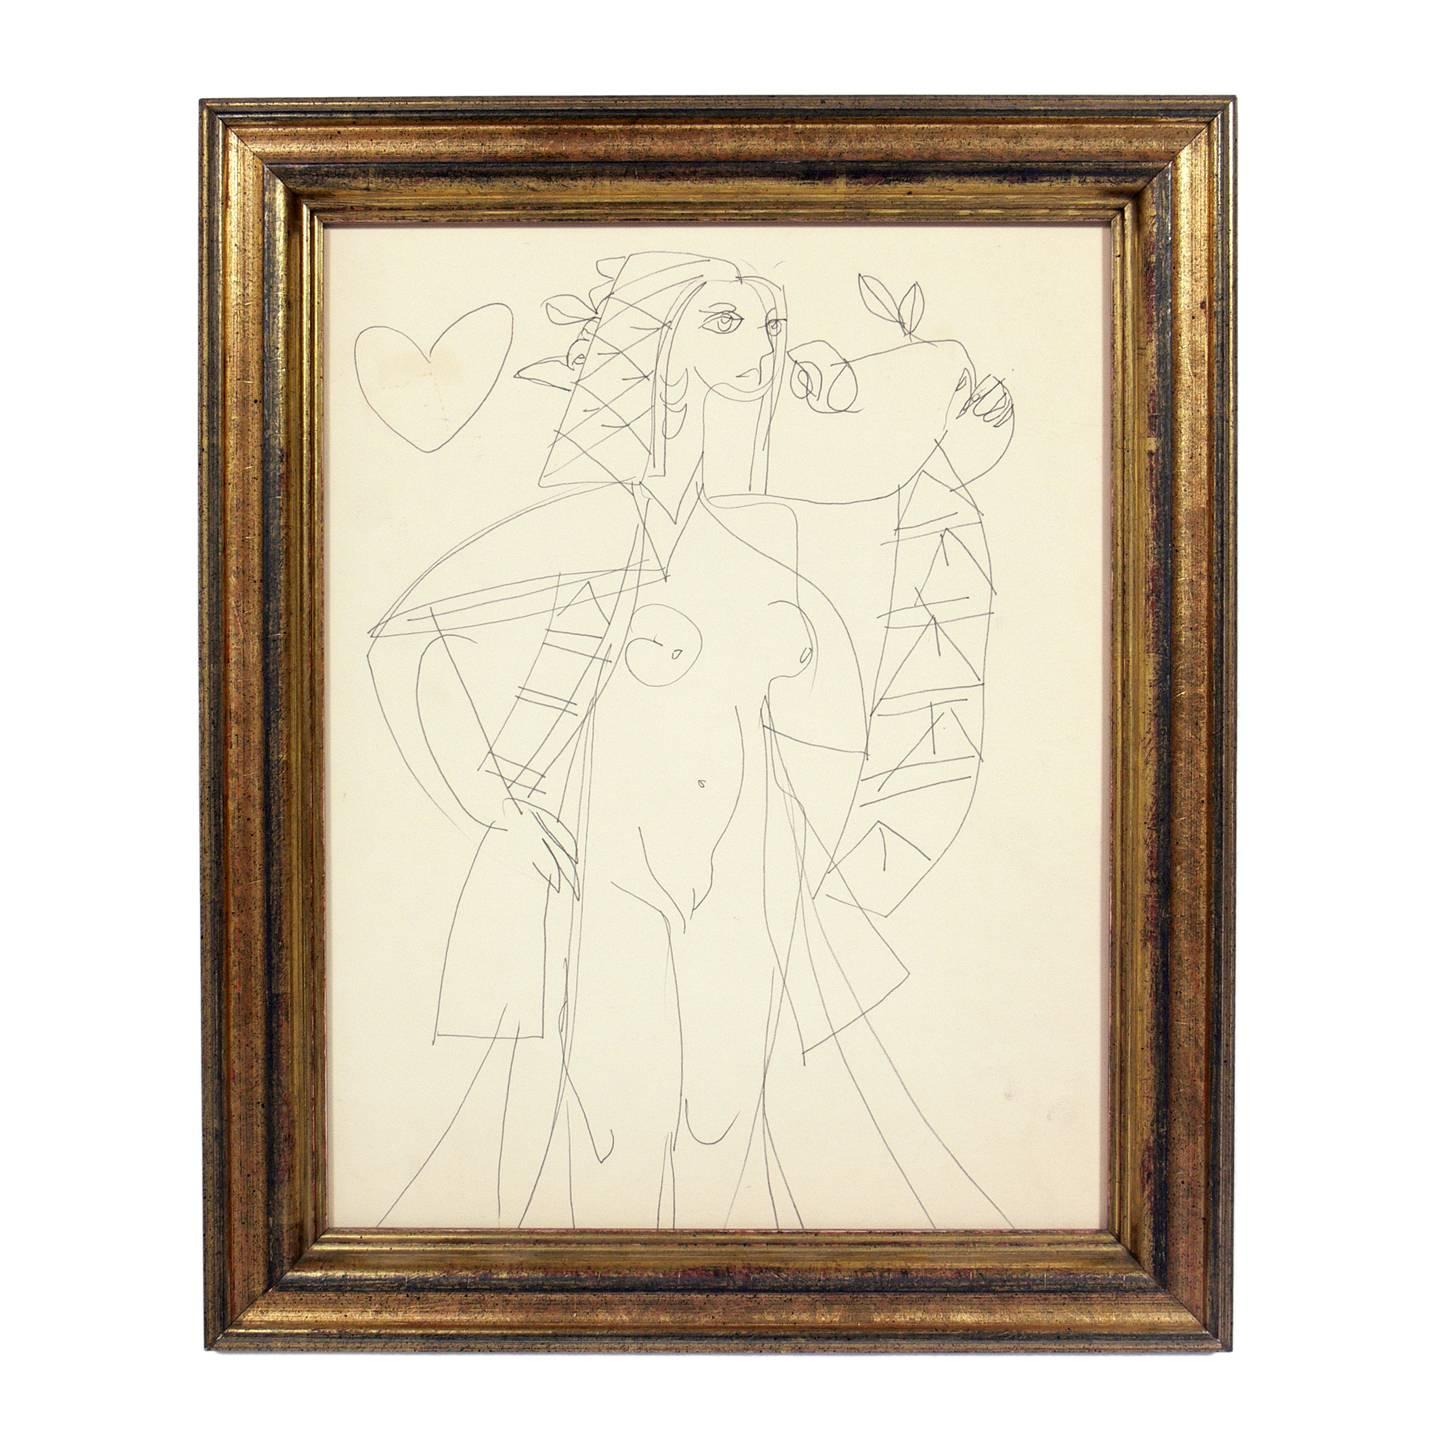 Sélection d'art moderne, vers les années 1950-1970. De gauche à droite, ce sont :

1) Le dessin abstrait de femme nue, probablement américain, vers les années 1950. Il a été VENDU.
2) La petite peinture abstraite, probablement américaine, vers les